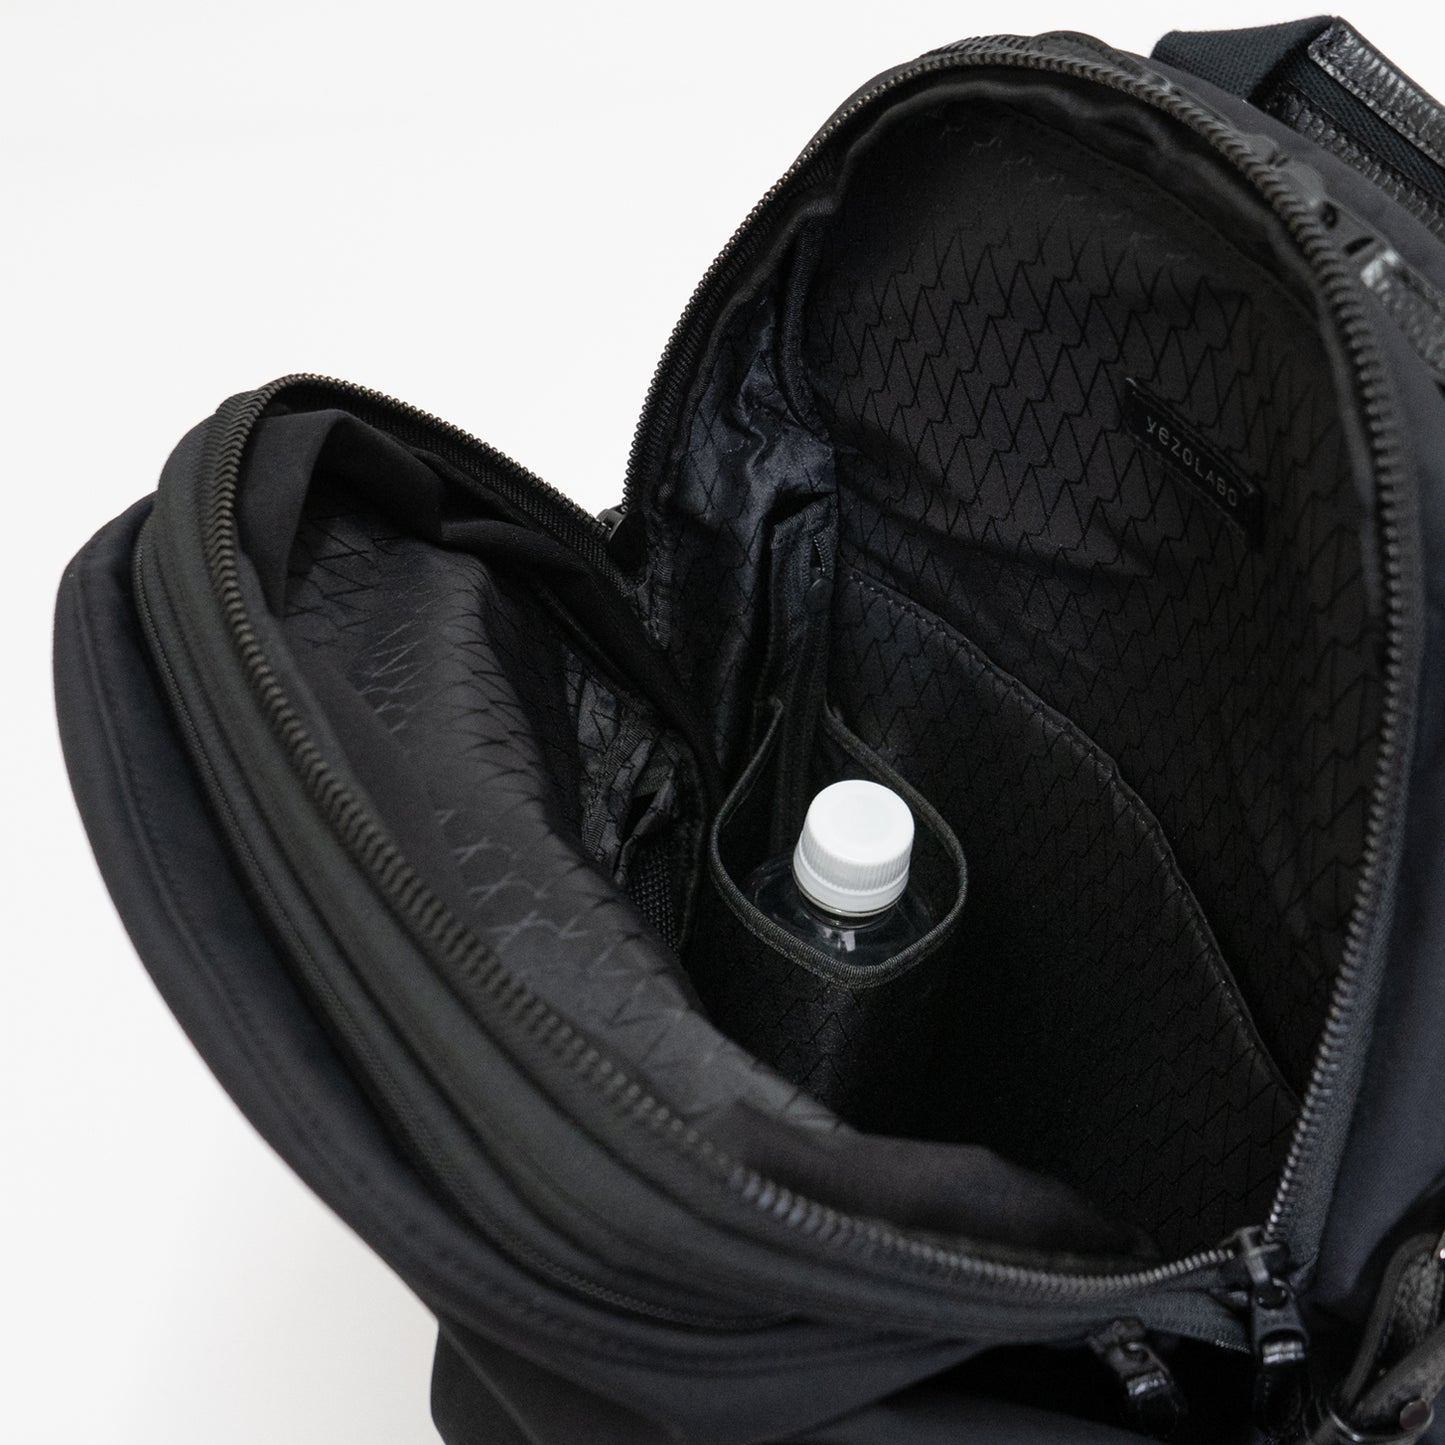 「Momonga ユーティリティバックパック」のホルダーポケットは、水筒や傘などを収納でき、外から直接アクセスが可能です。